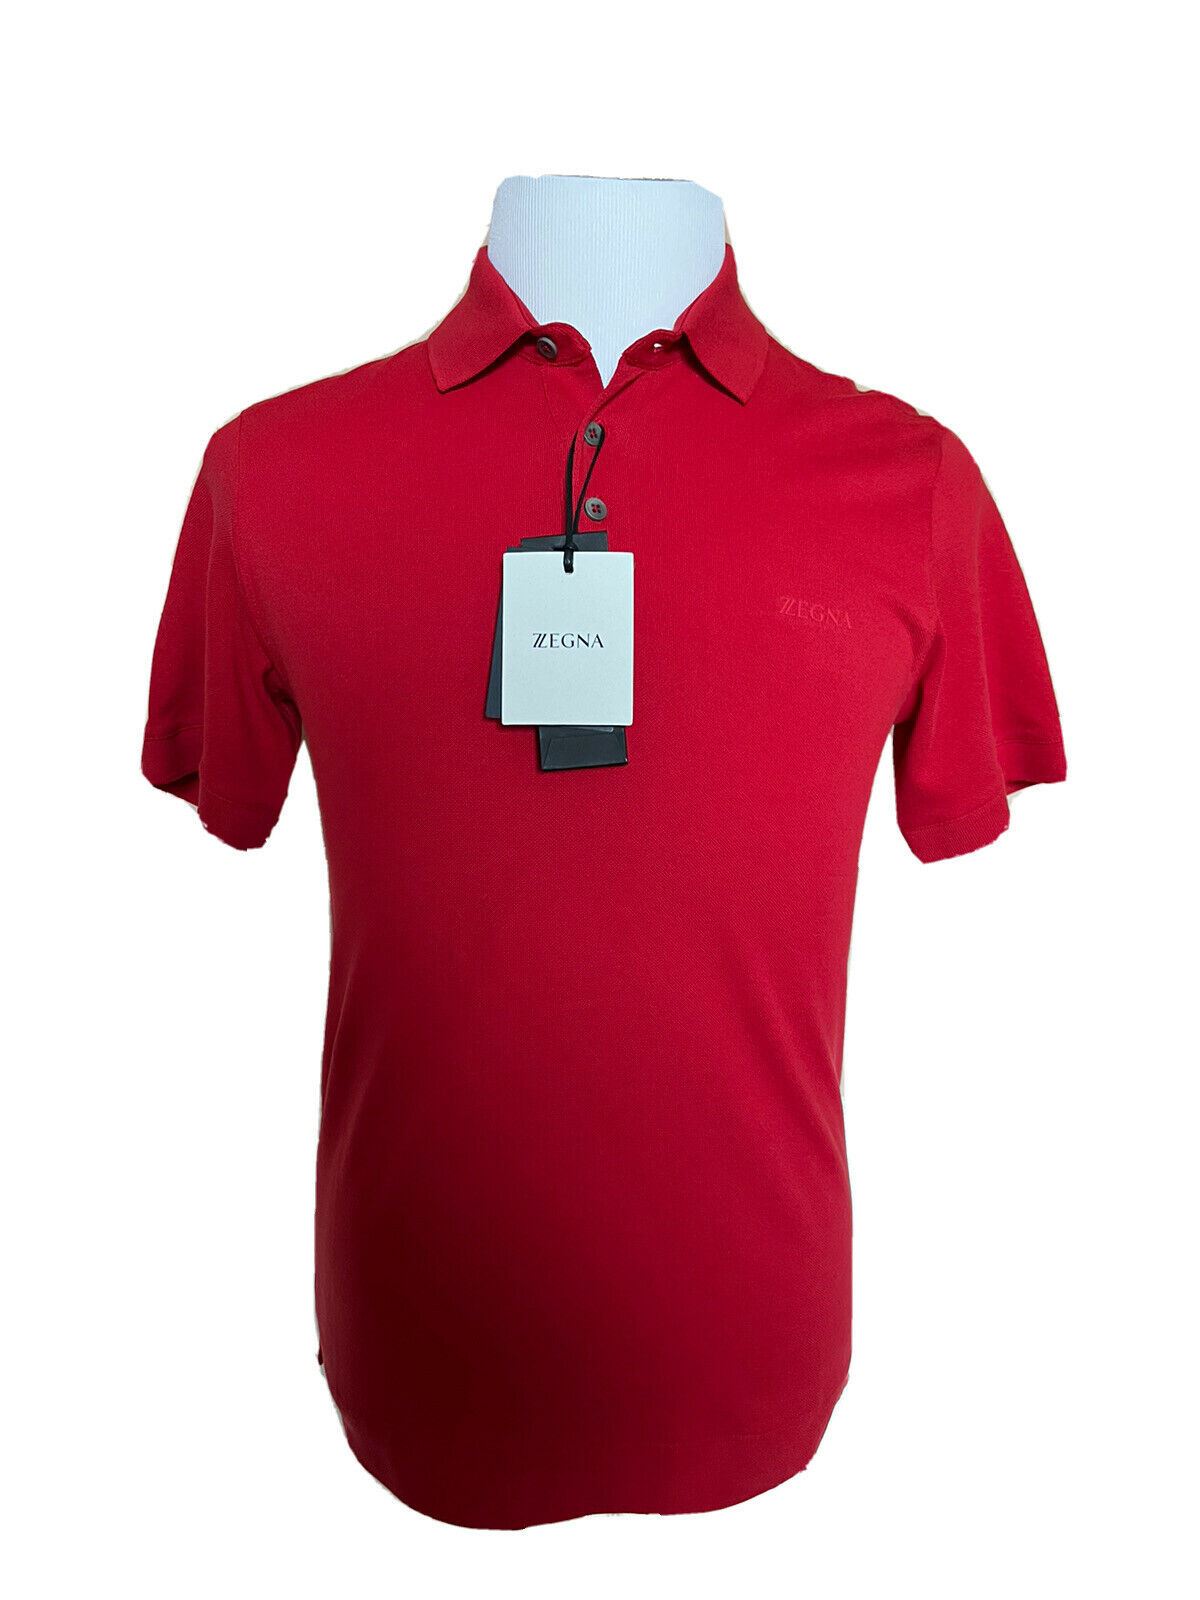 СЗТ 375 долларов США ZEGNA Хлопковая рубашка-поло с рубашкой, красная XS ZZF600